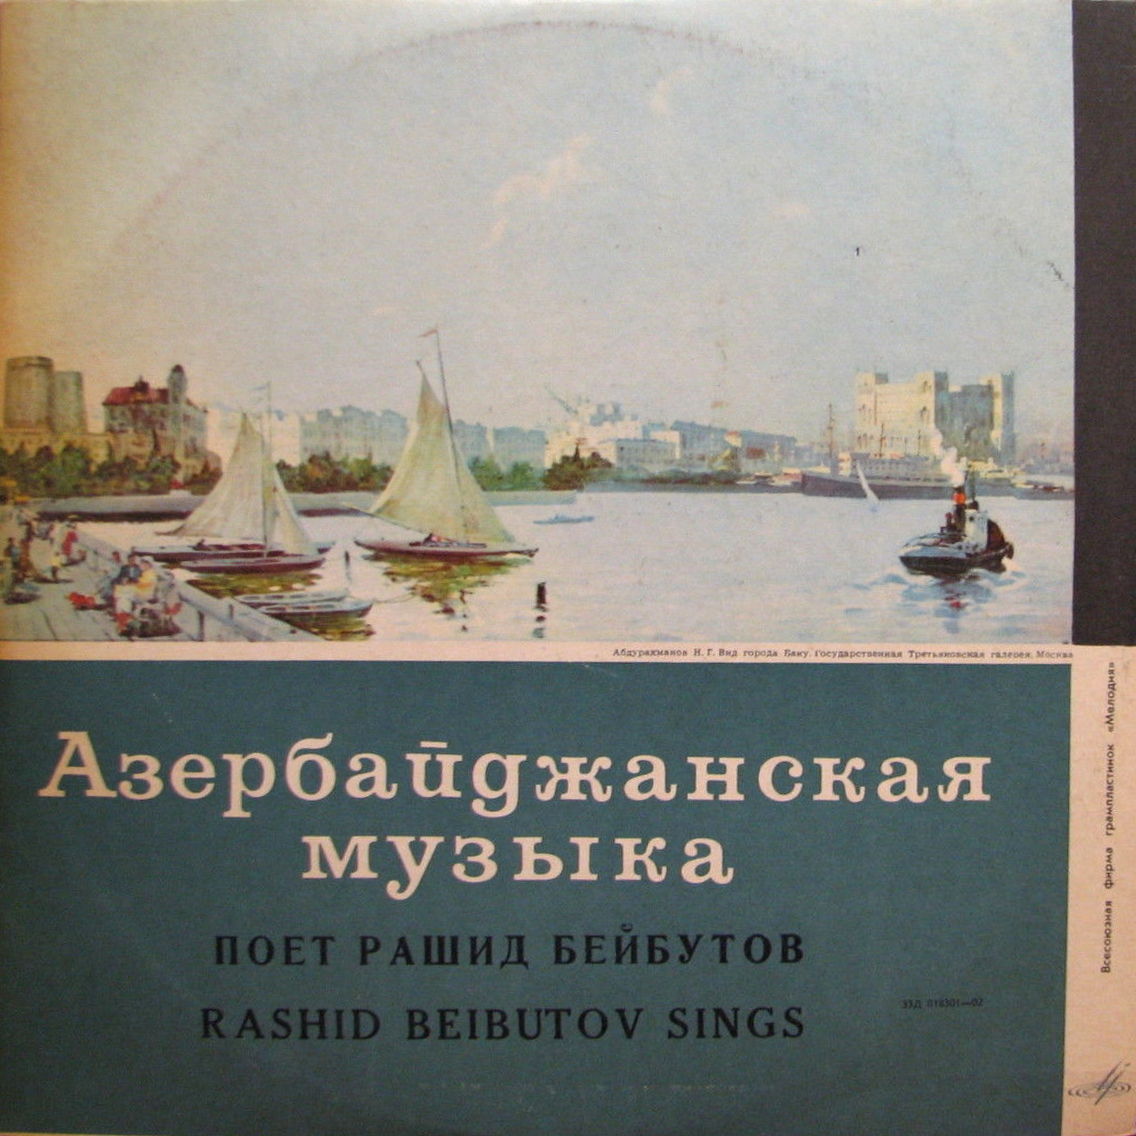 Рашид БЕЙБУТОВ - Иранские и азербайджанские песни